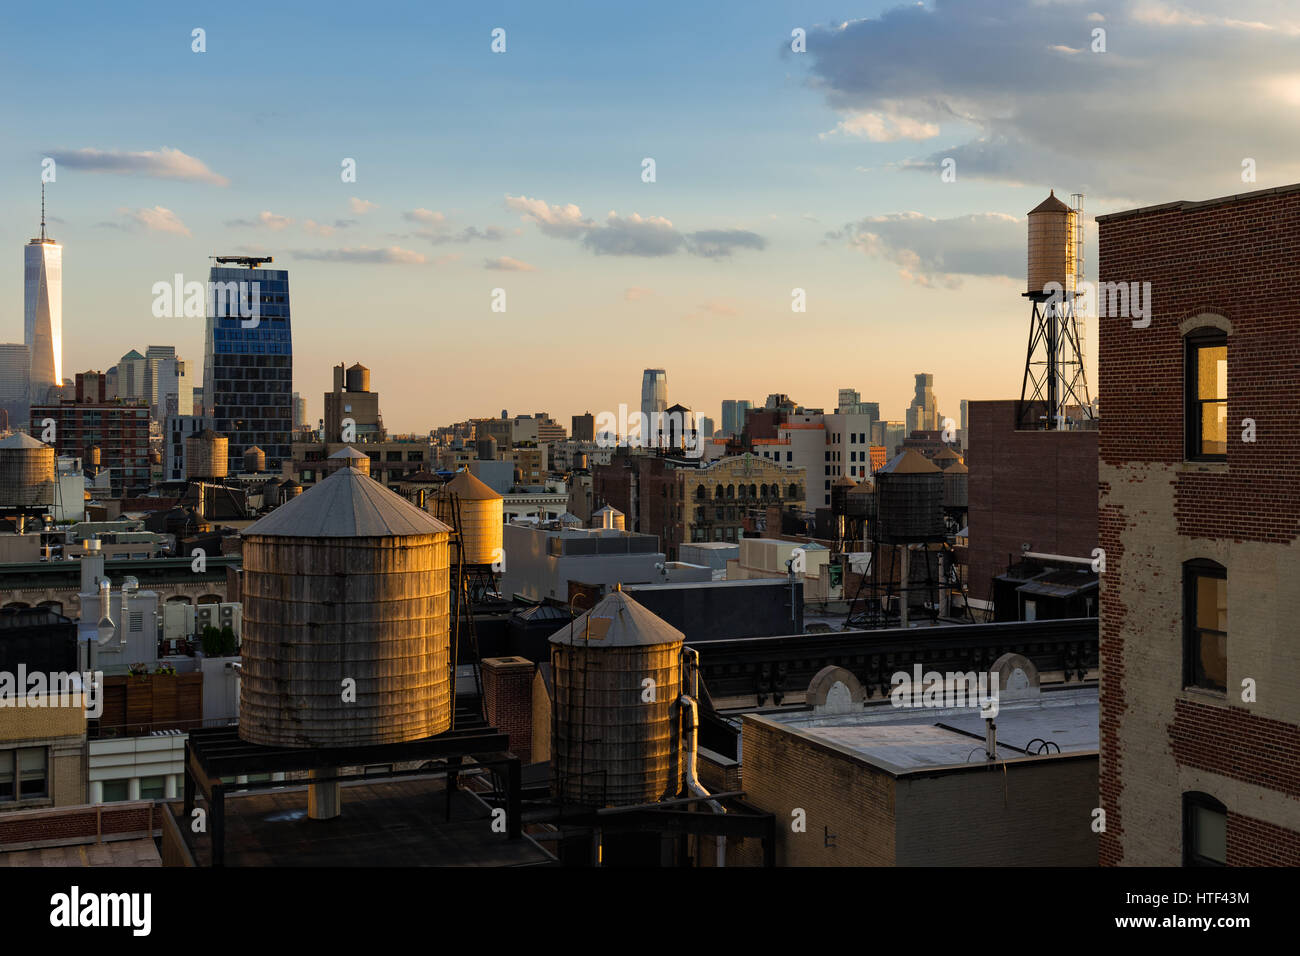 Chelsea-Dächer im Sommer Abendlicht mit Hochhäusern, Wassertürme und das World Trade Center in der Ferne. Manhattan, New York City Stockfoto